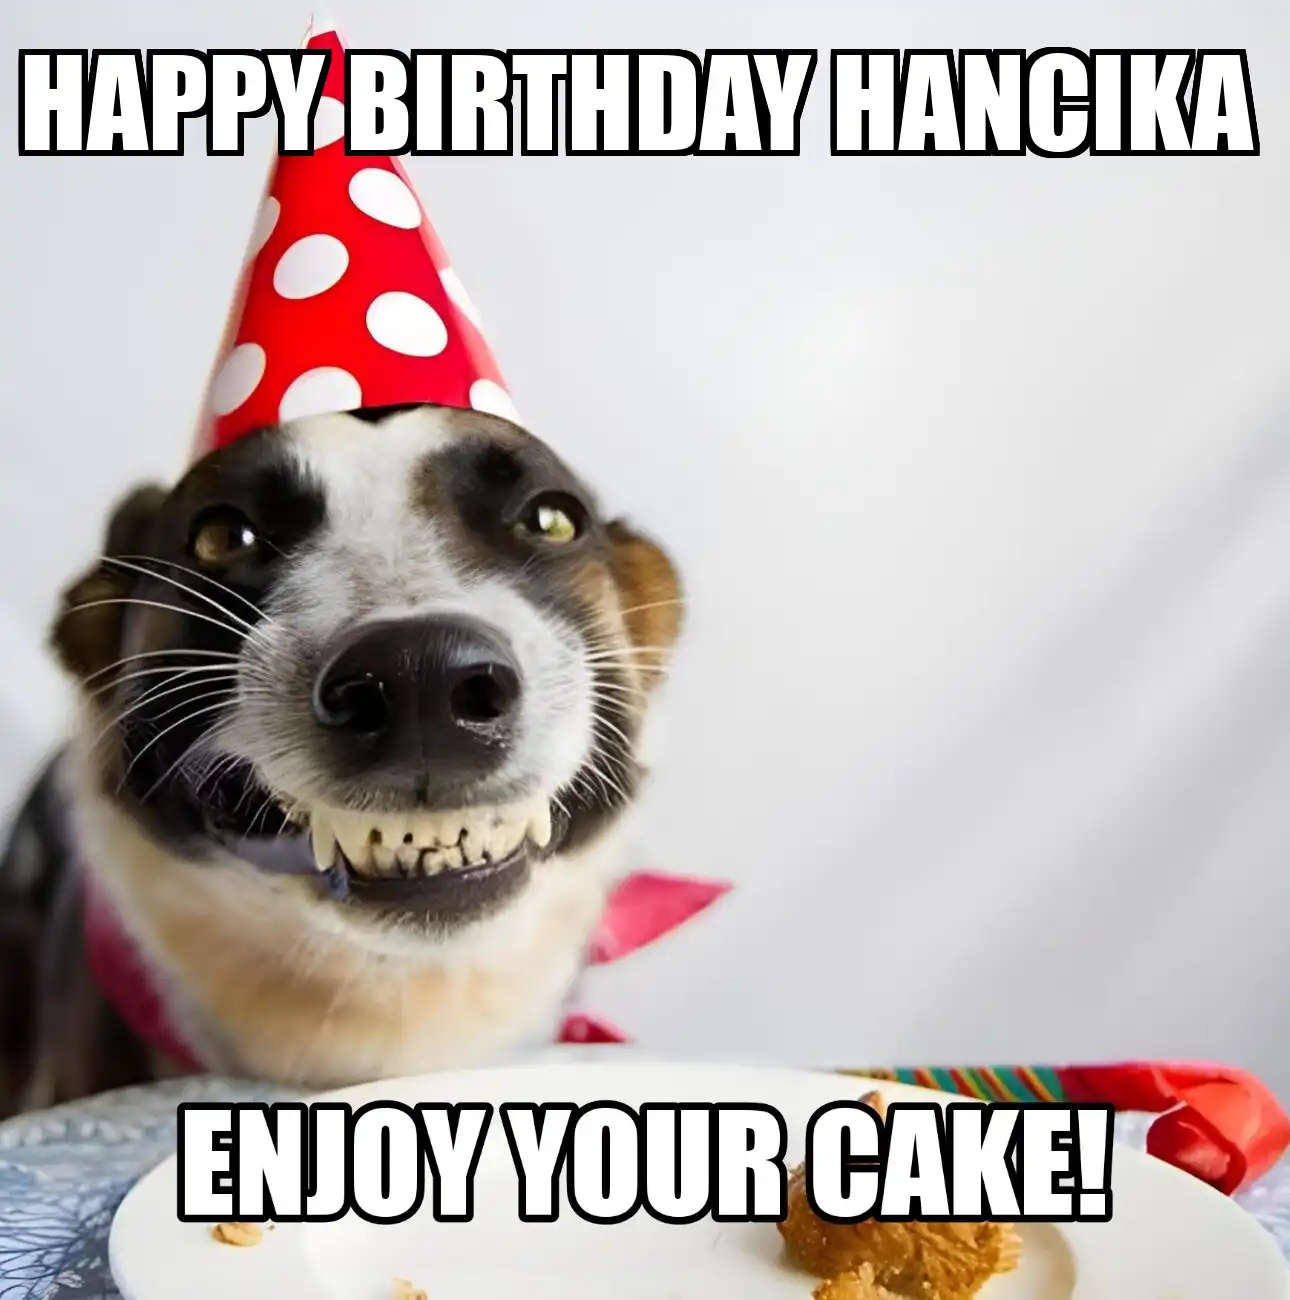 Happy Birthday Hancika Enjoy Your Cake Dog Meme